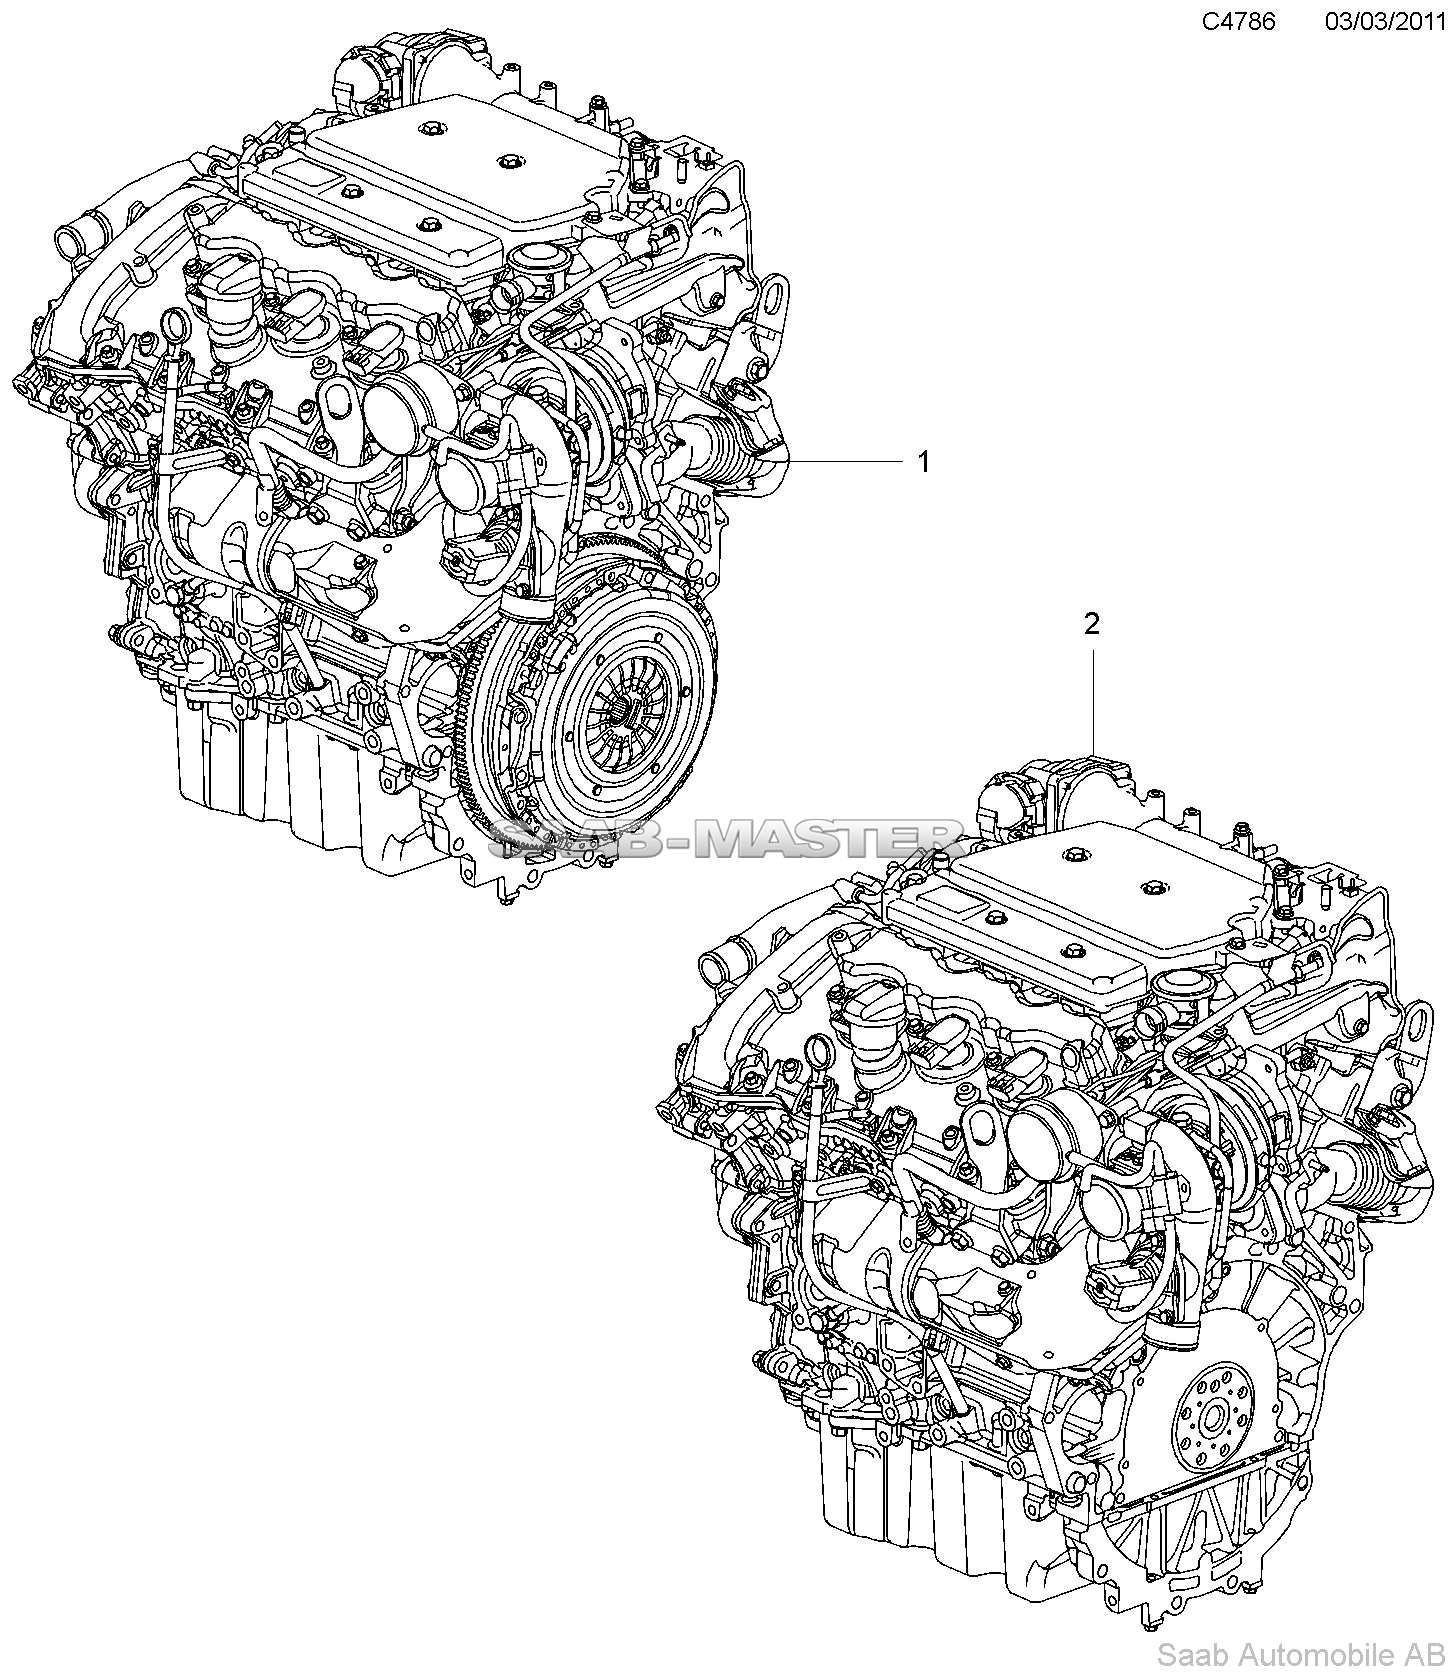 Базовый двигатель - Проводной аггрегат